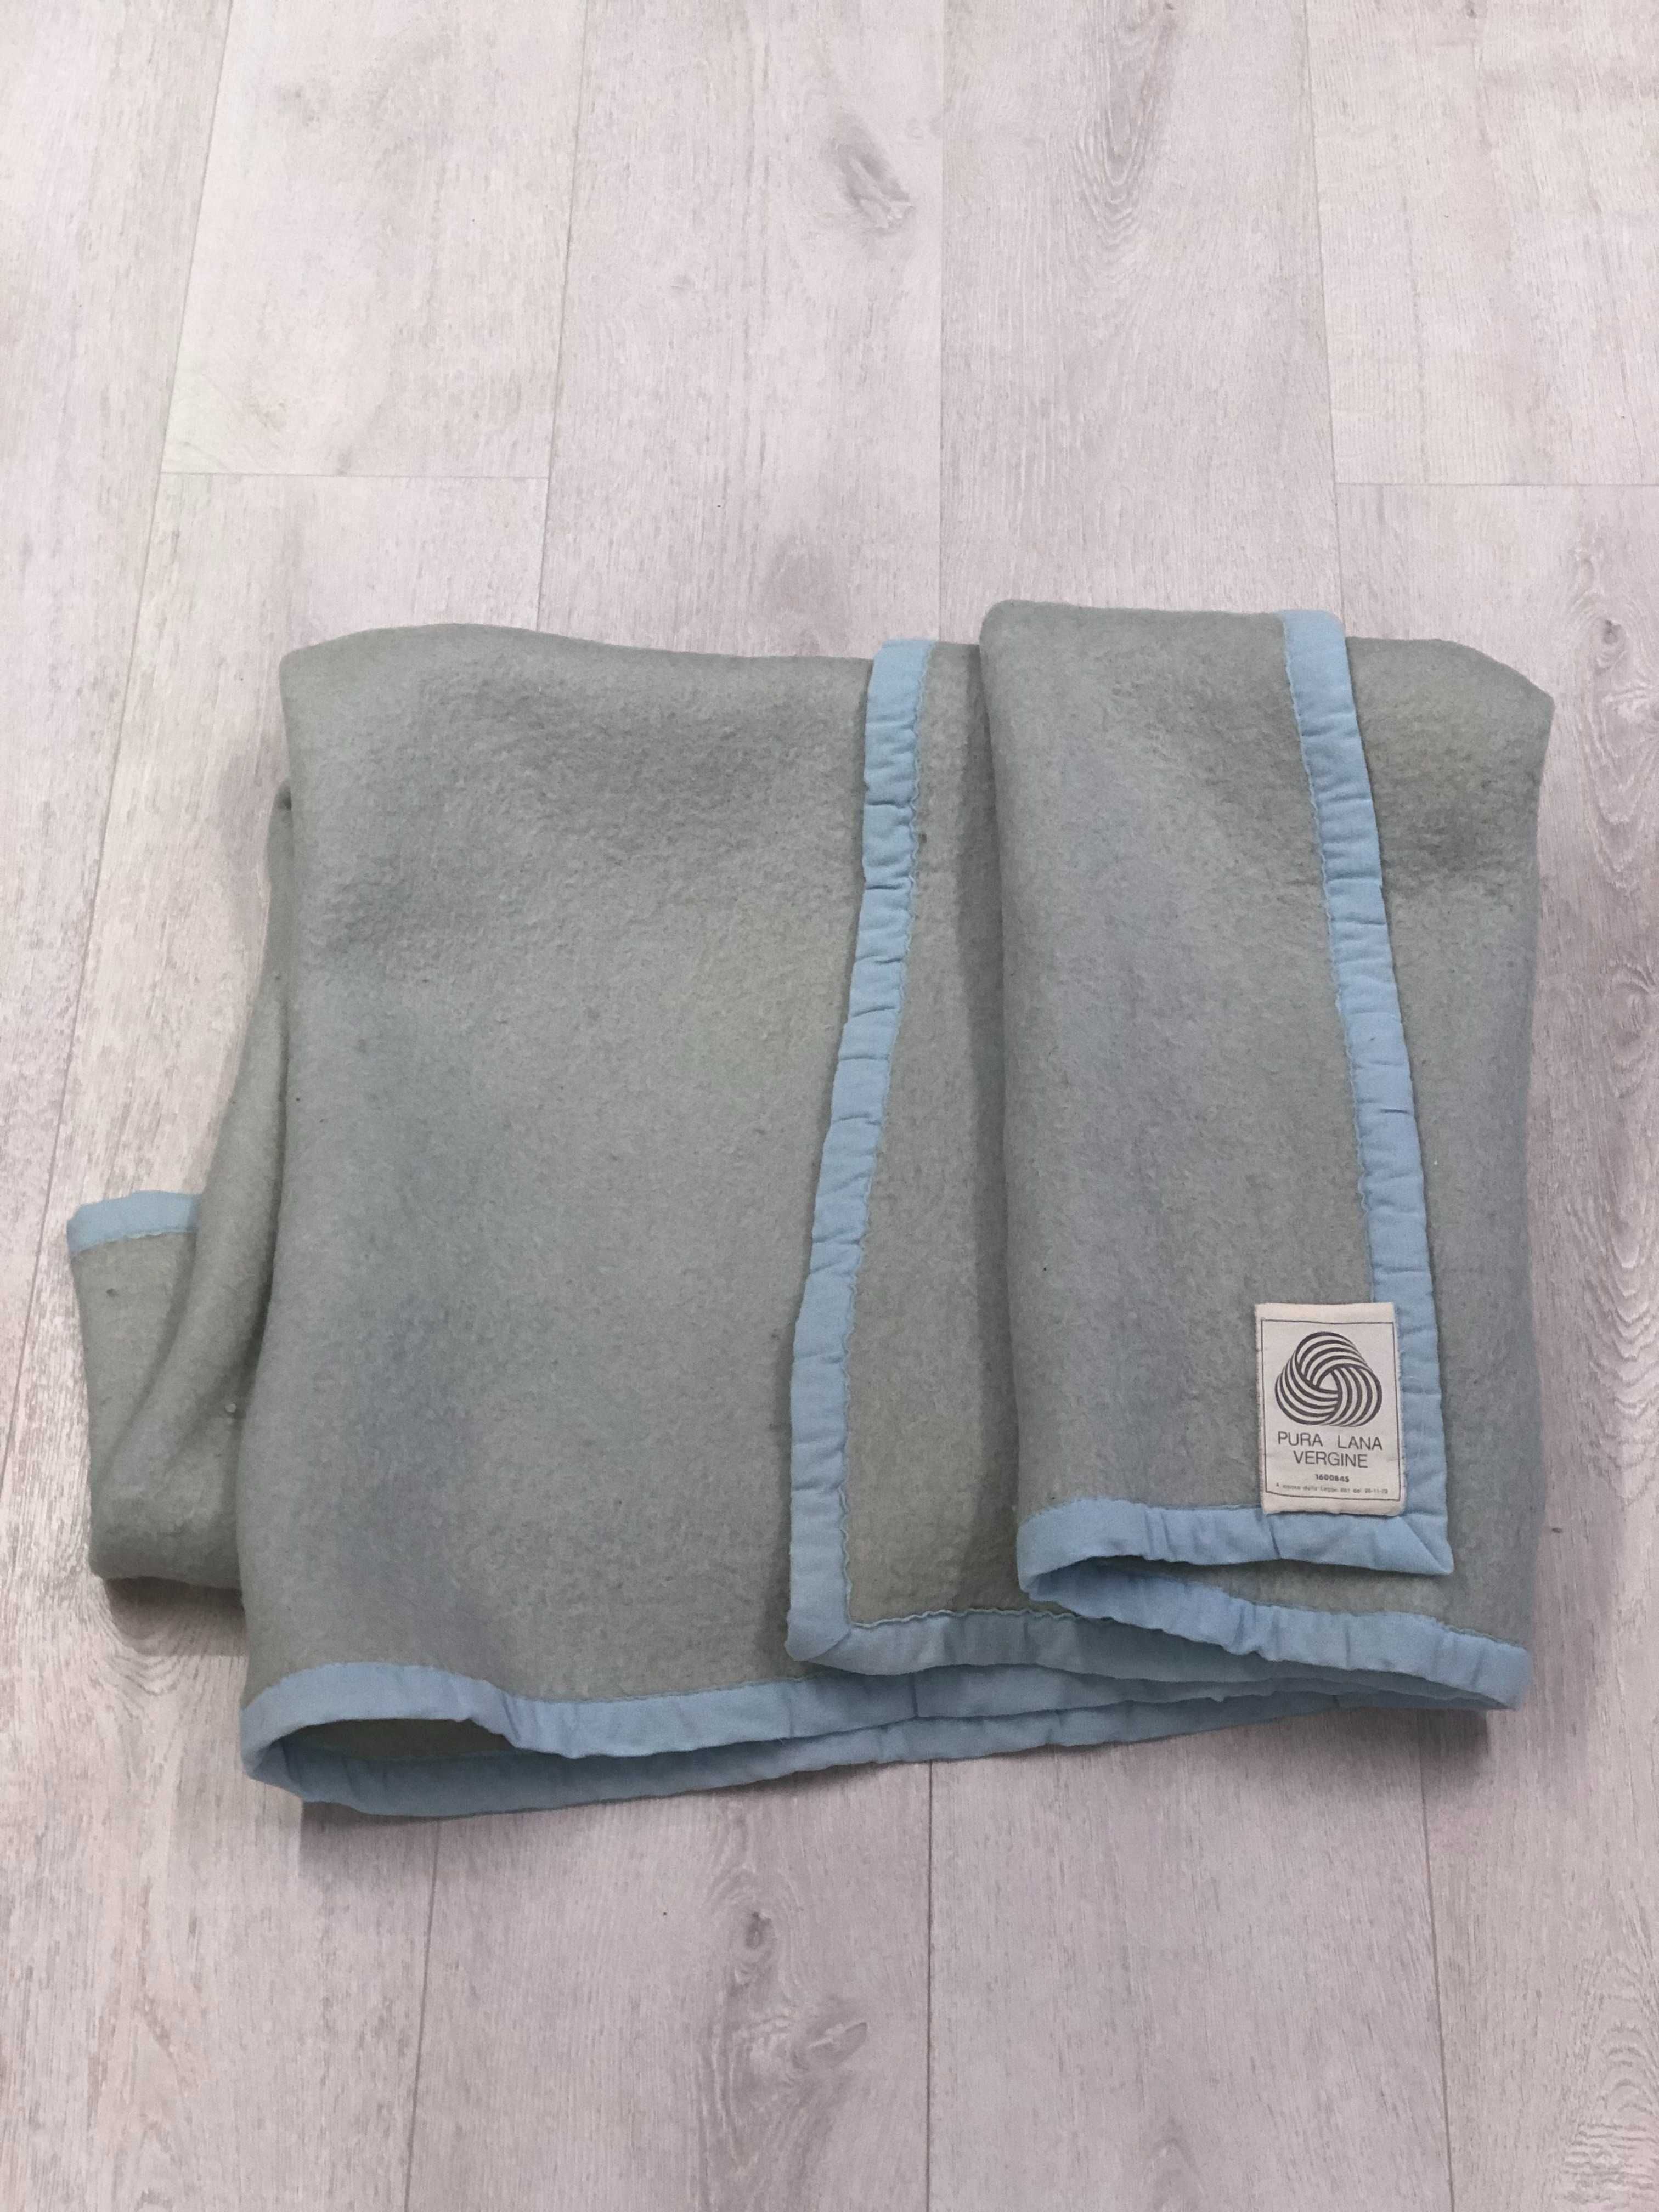 Итальянское шерстяное одеяло, 1.9м на 1.4м